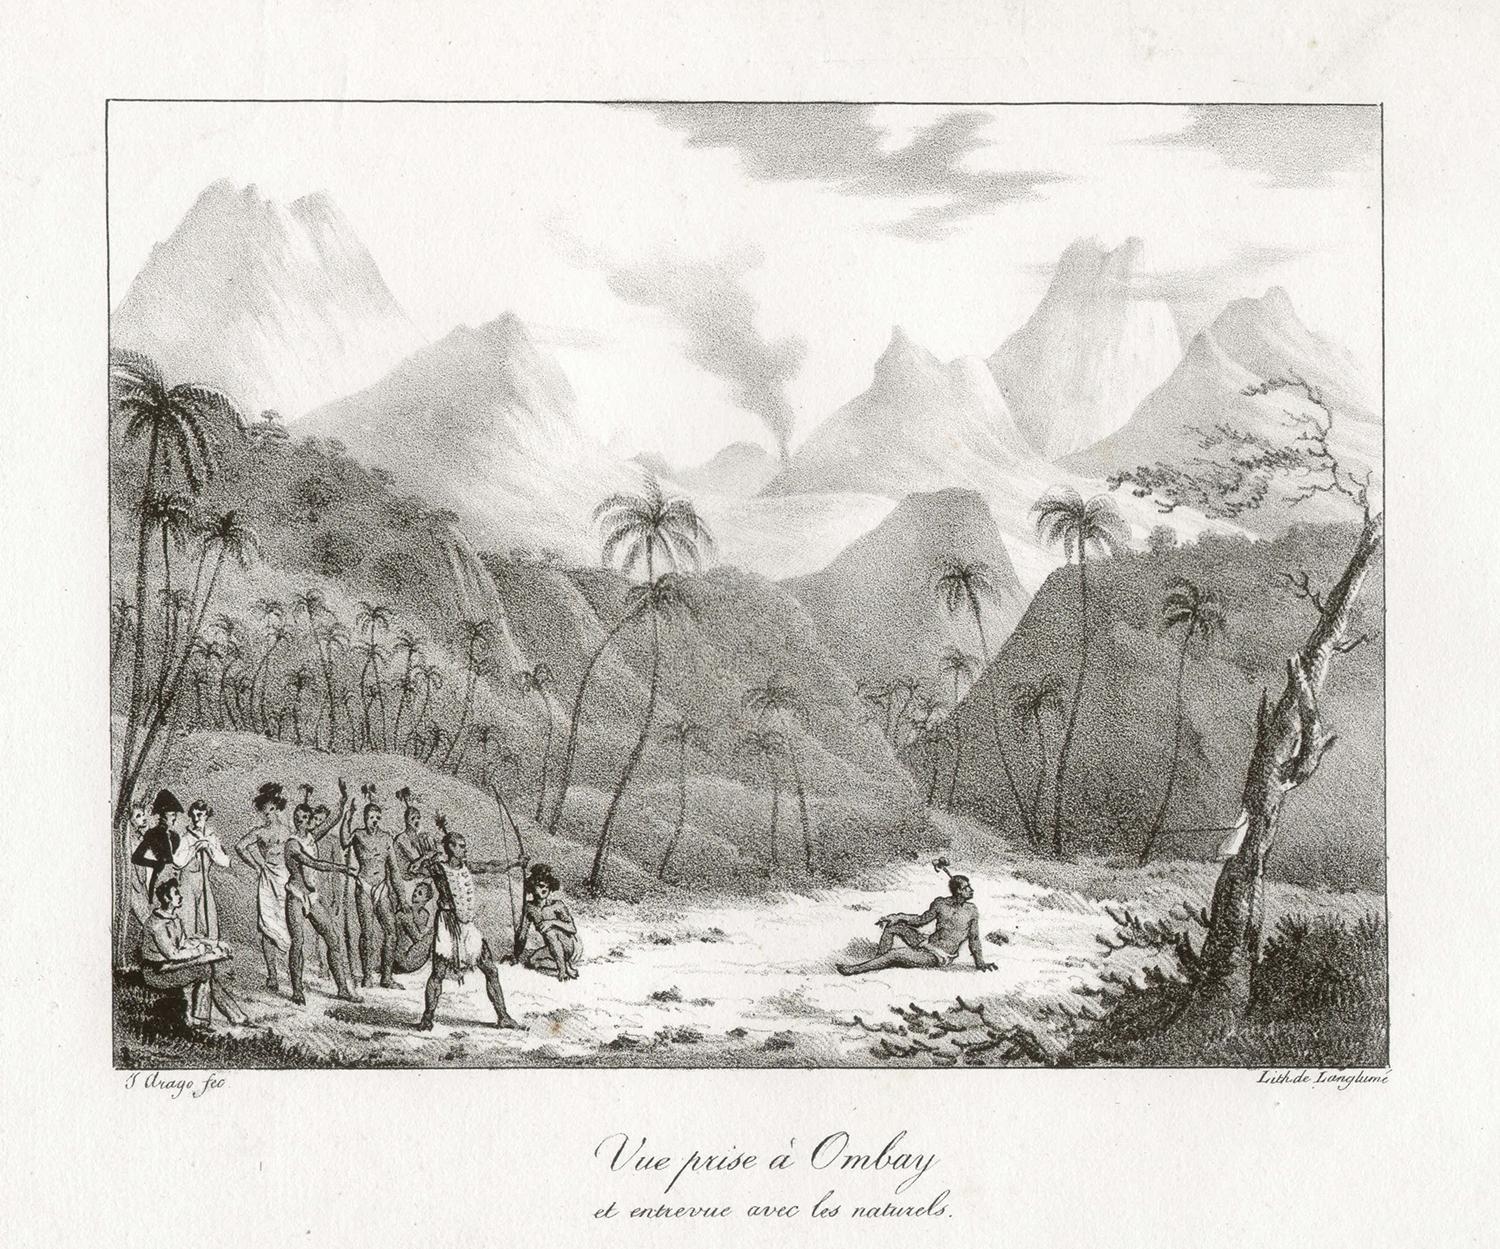 'Vue prise a Ombay et entervue avec les naturels', Freycinet lithograph